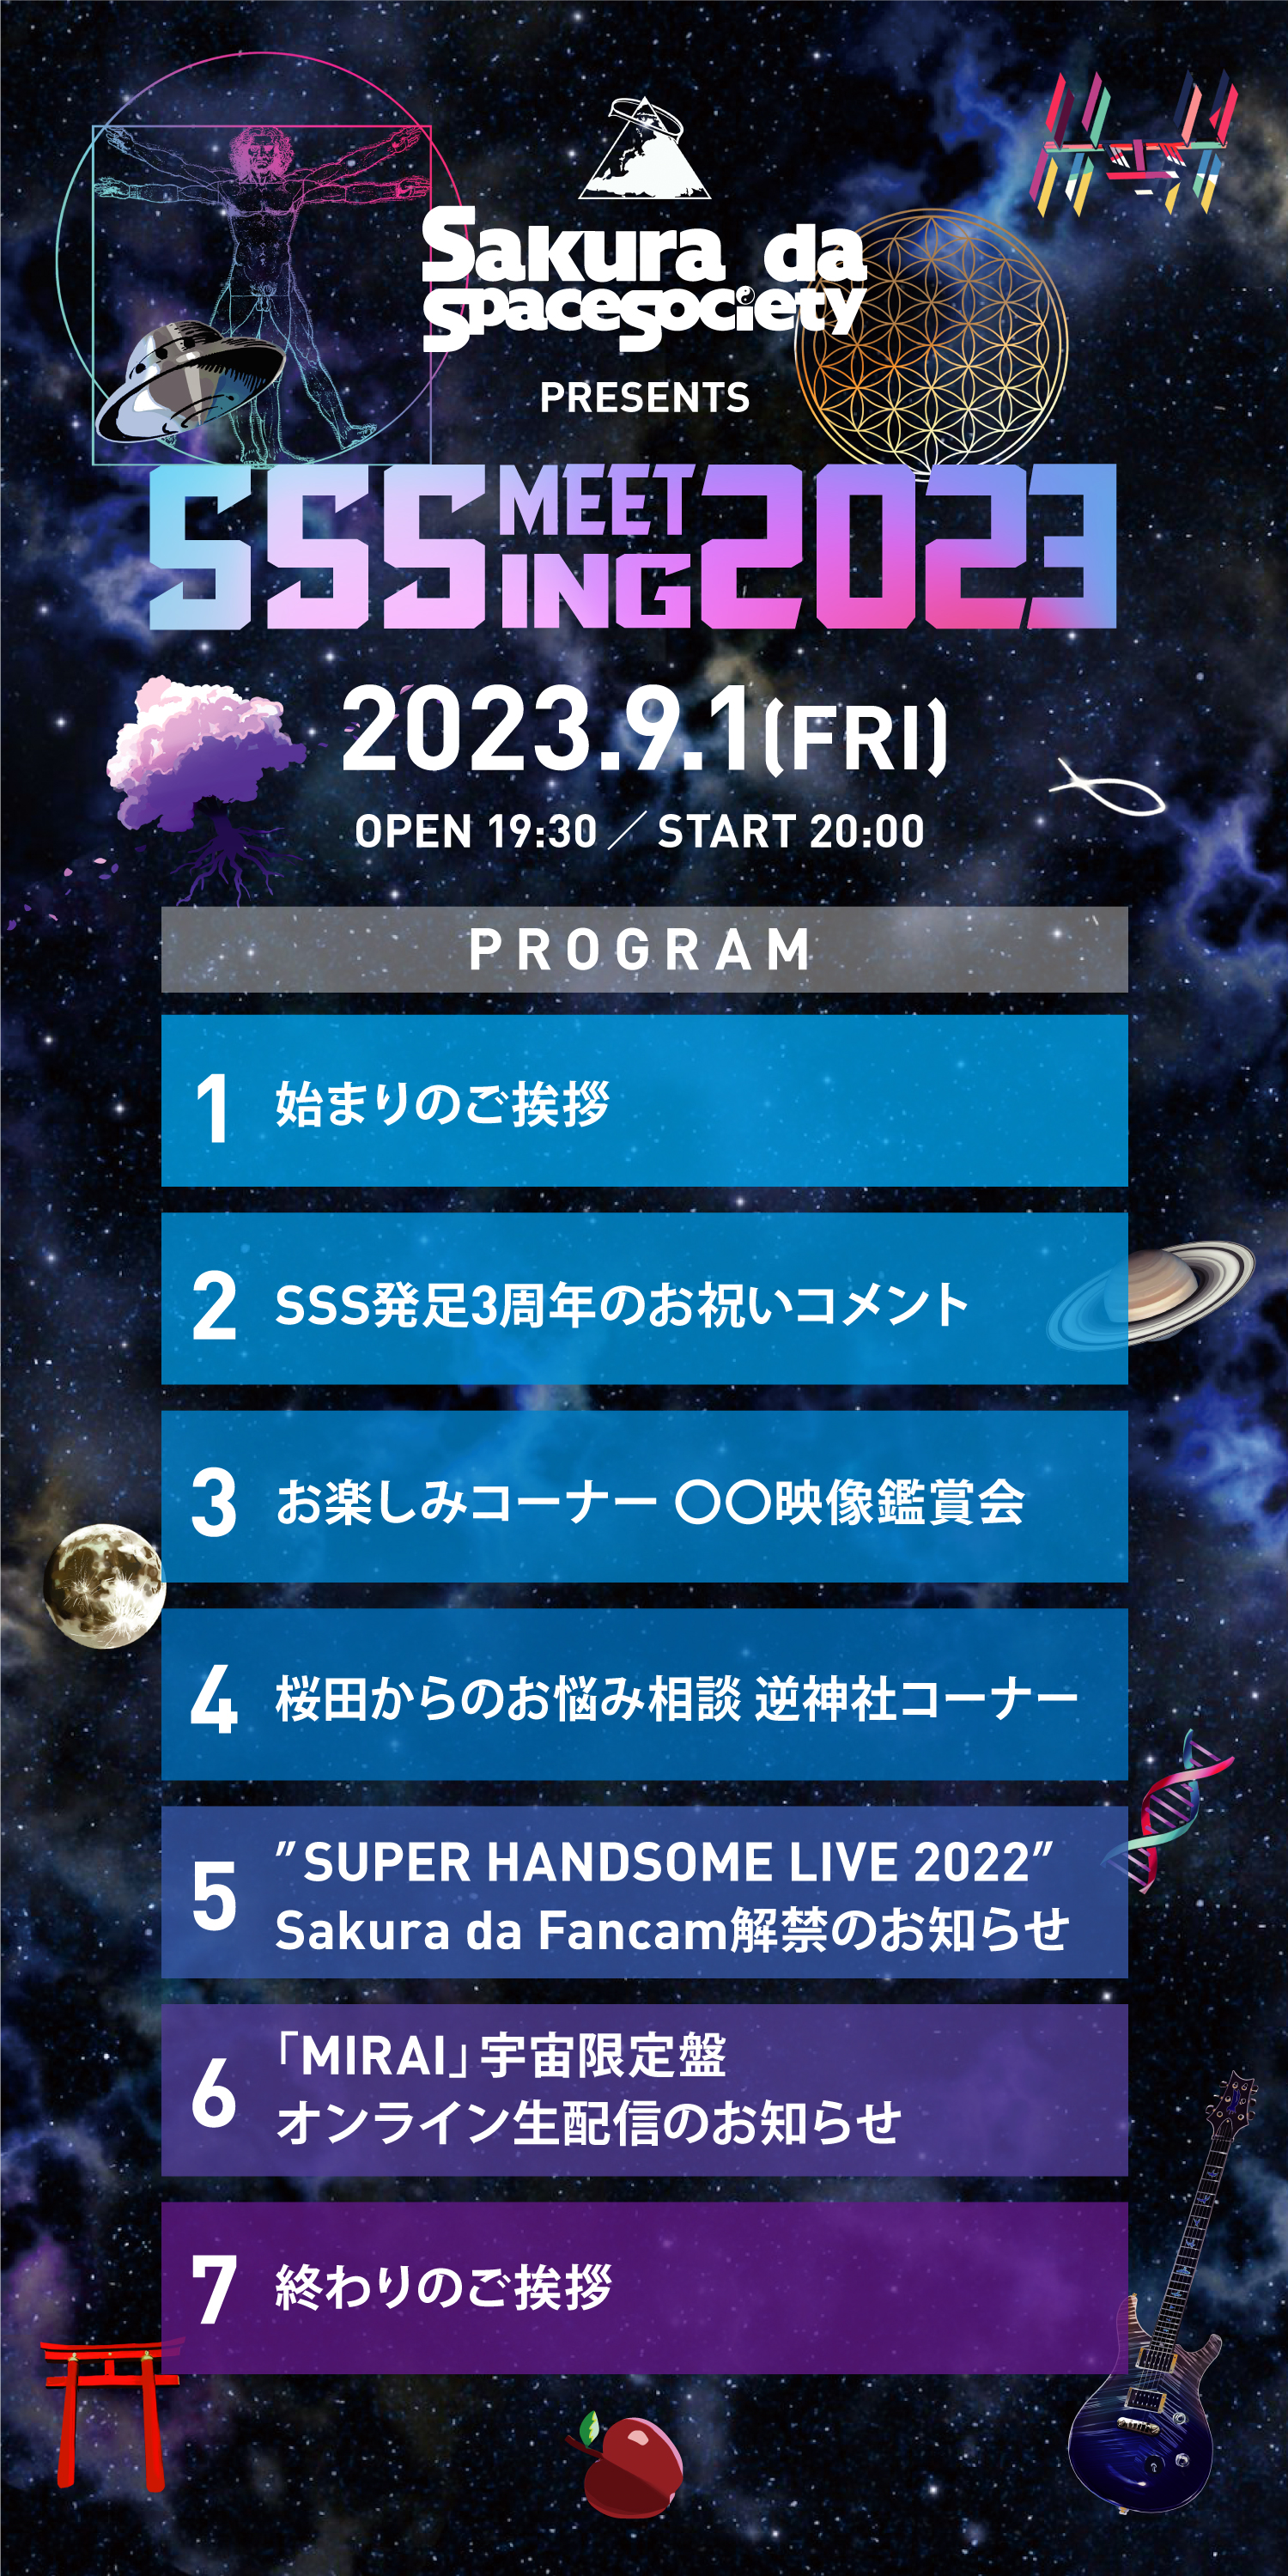 Sakura da Space Society設立3周年記念イベント
Sakura da Space Society presents『SSS Meeting 2023』開催決定！